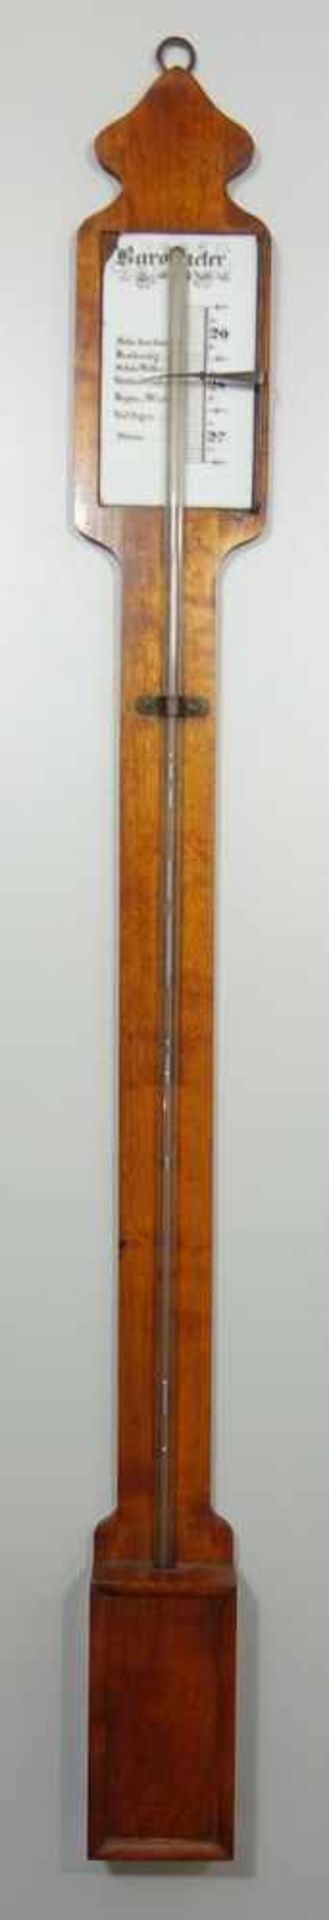 Torricelli- Barometer, um 1850, Holzpaneel mit Quecksilber gefüllter Glasröhre, Skala auf